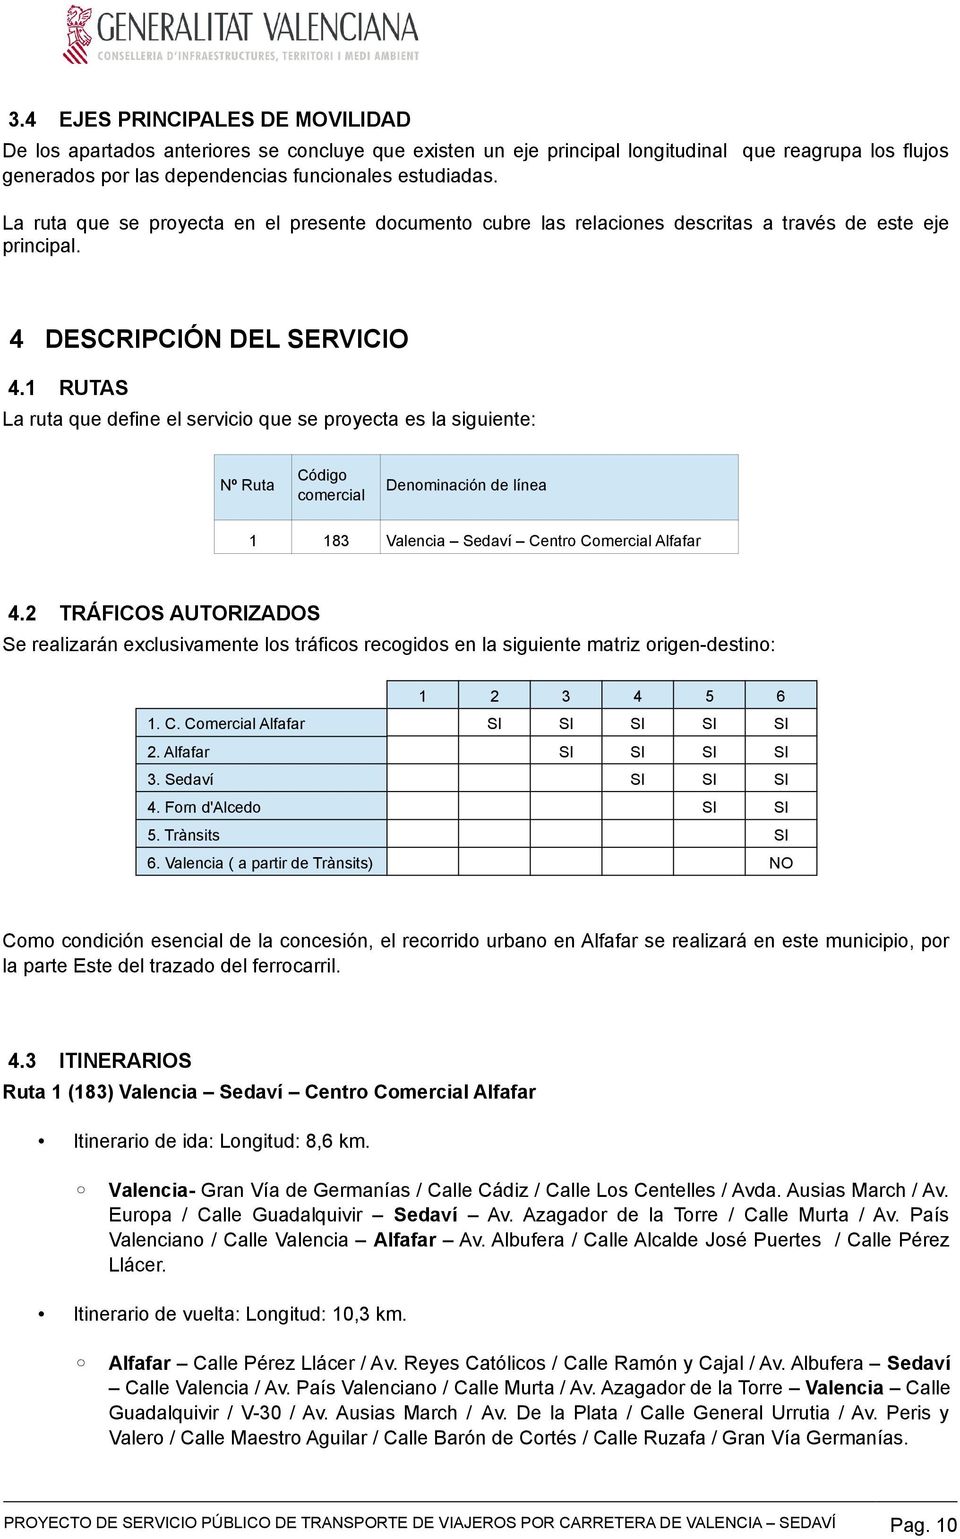 1 RUTAS La ruta que define el servicio que se proyecta es la siguiente: Nº Ruta Código comercial Denominación de línea 1 183 Valencia Sedaví Centro Comercial Alfafar 4.